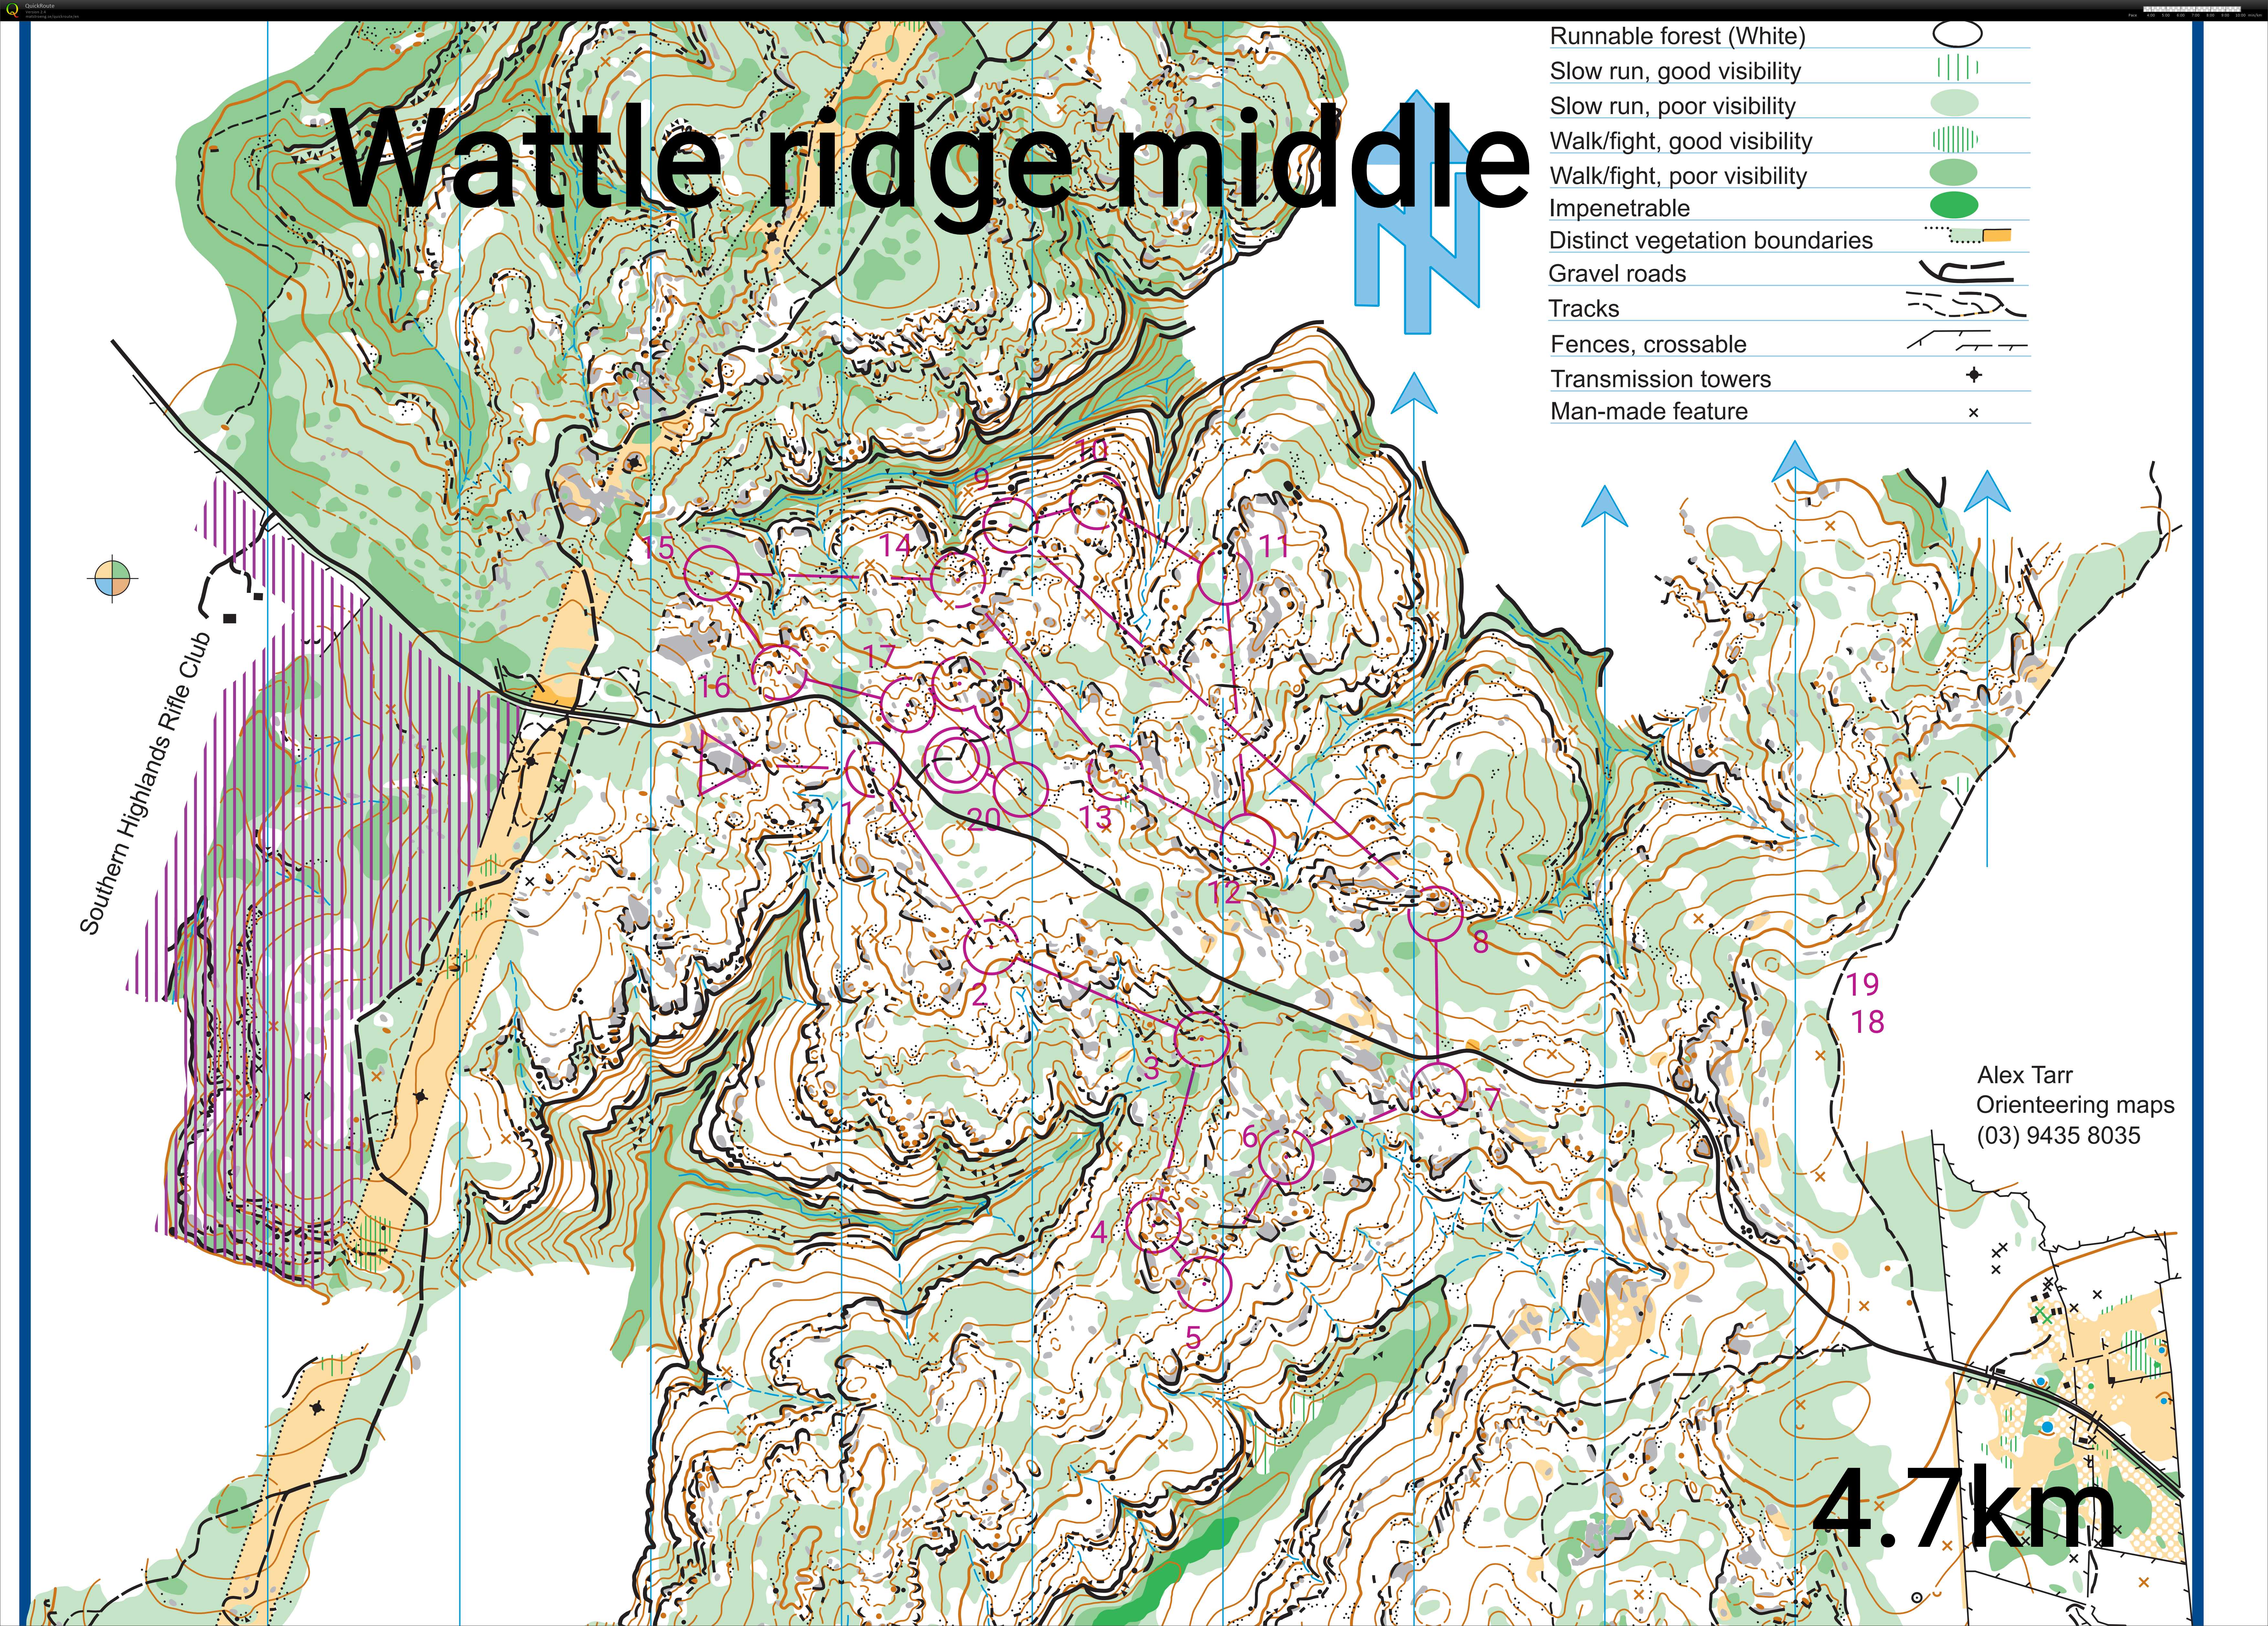 Wattle ridge middle sim (06.07.2020)